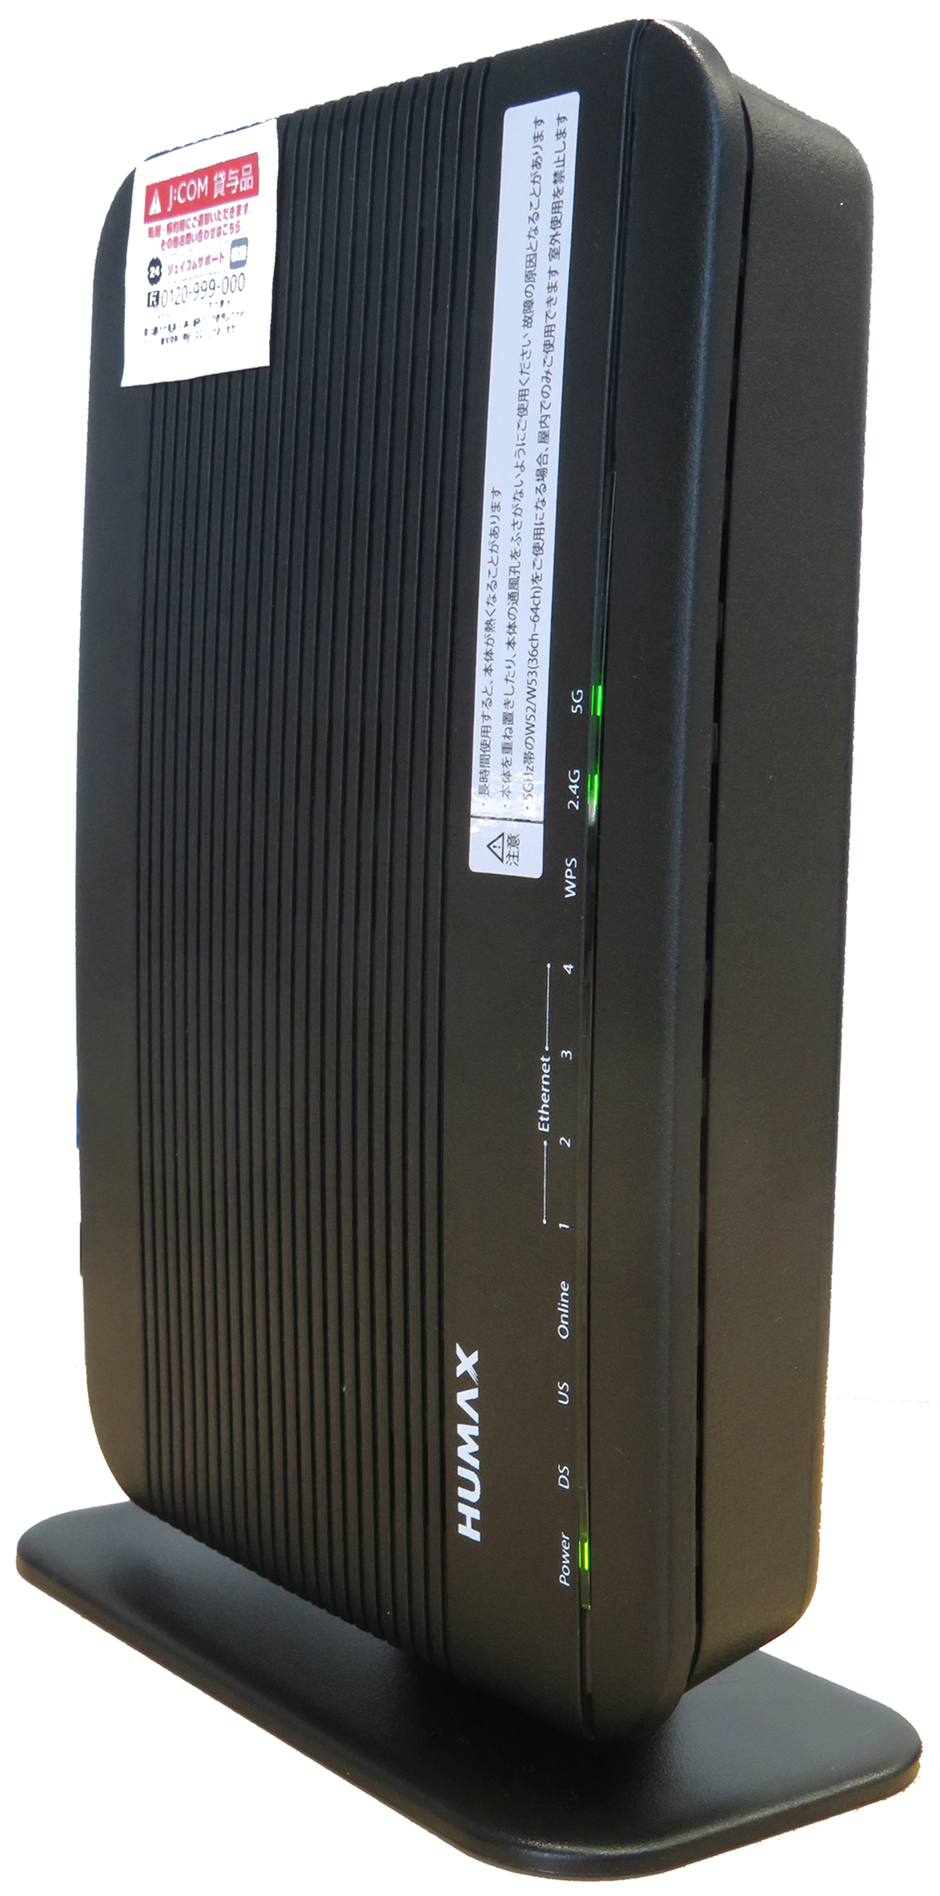 家庭内ネットワークサービス J Com Wi Fi 無線モデム設定ガイド